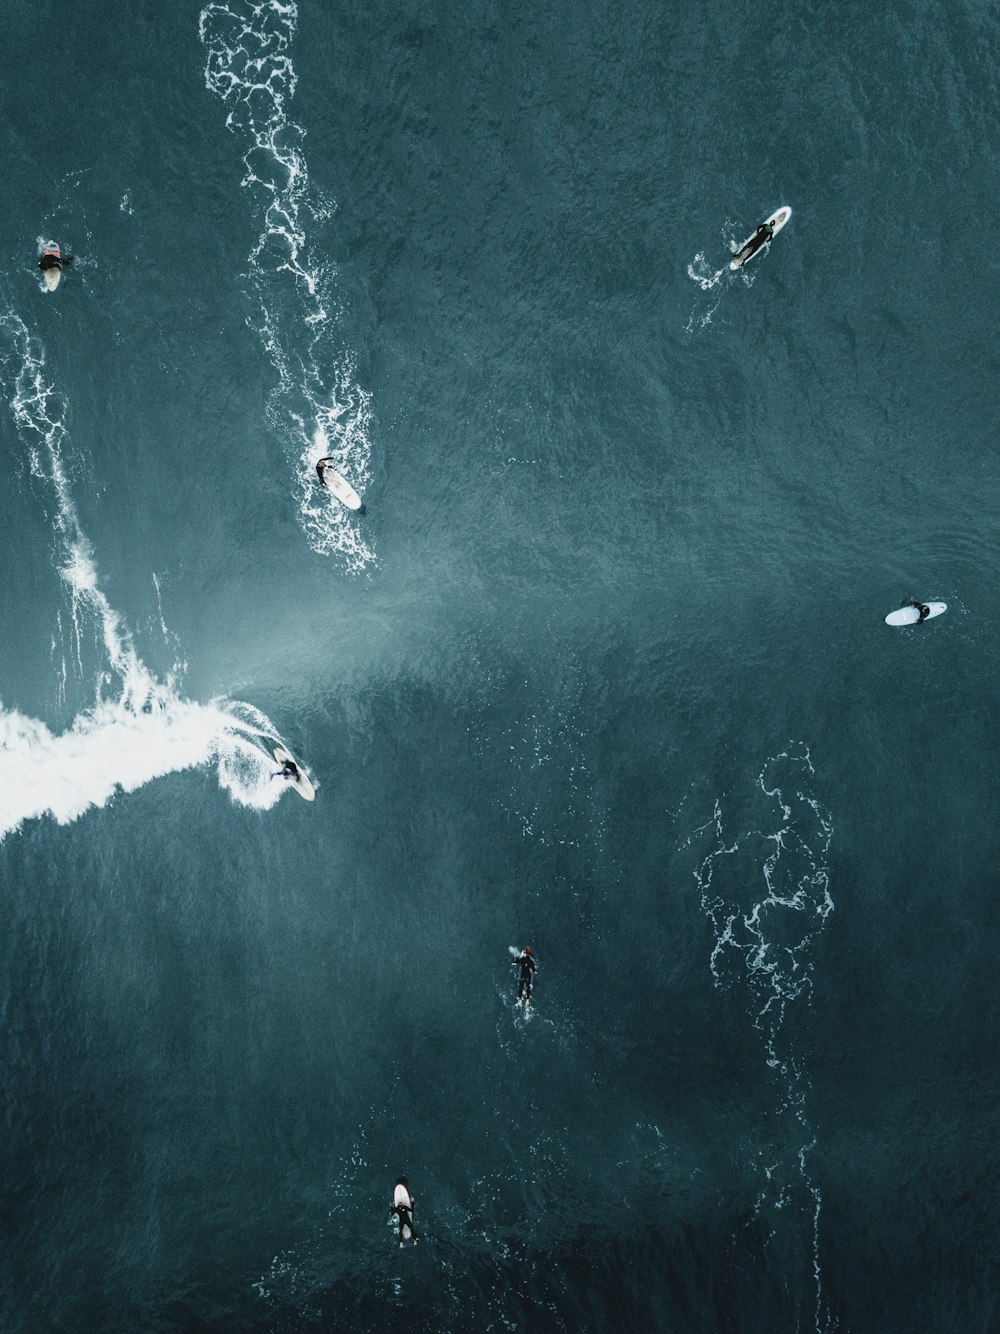 Gente surfeando en el océano